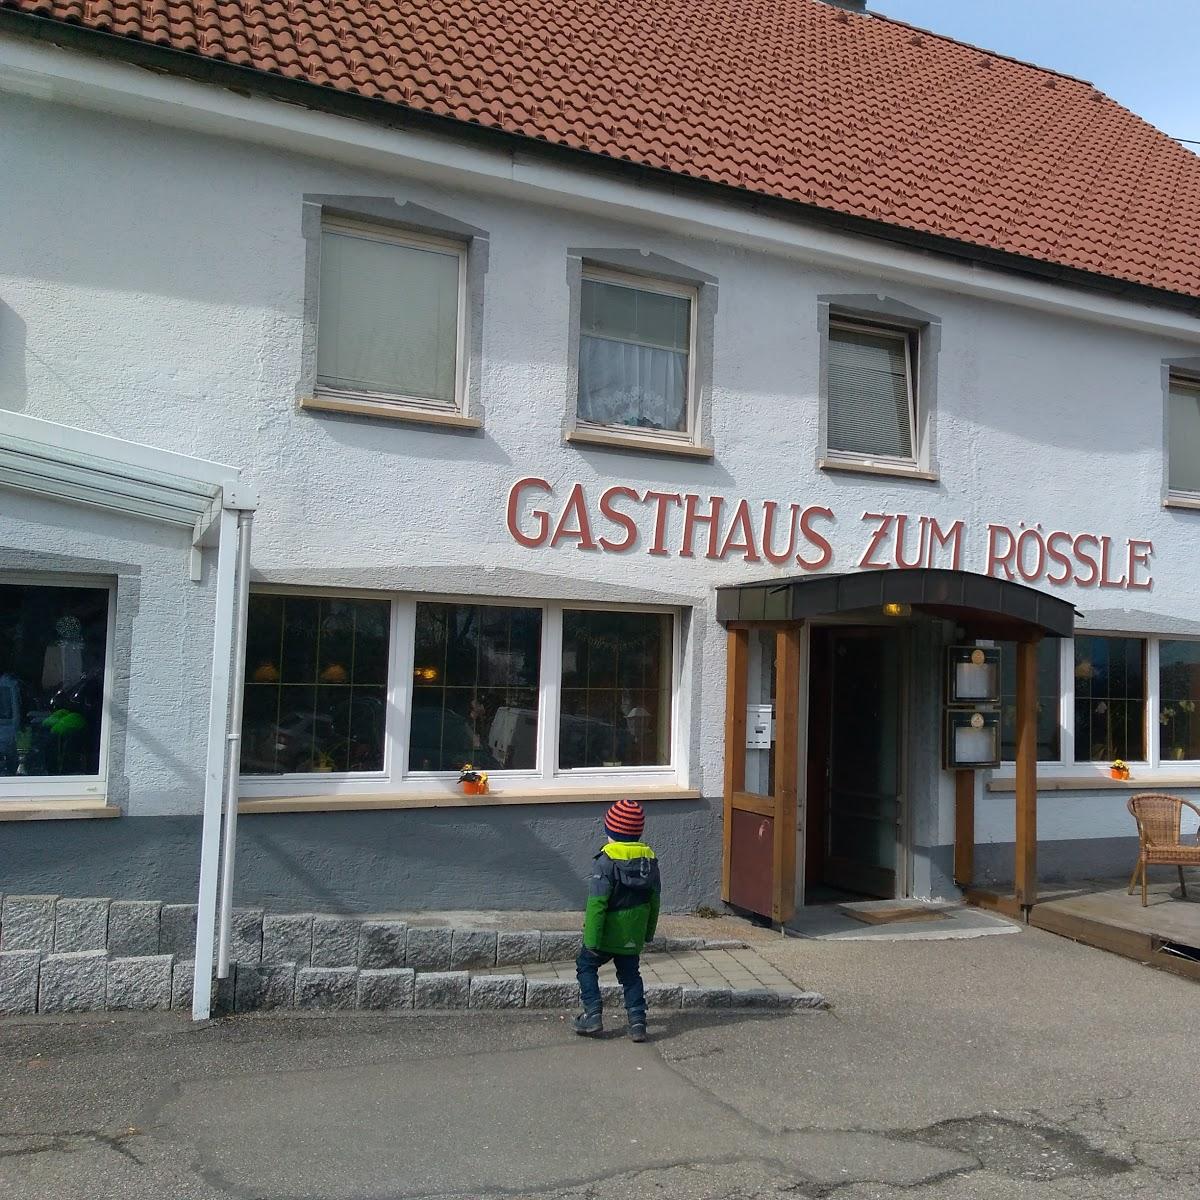 Restaurant "Gästehaus Rössle" in Villingen-Schwenningen